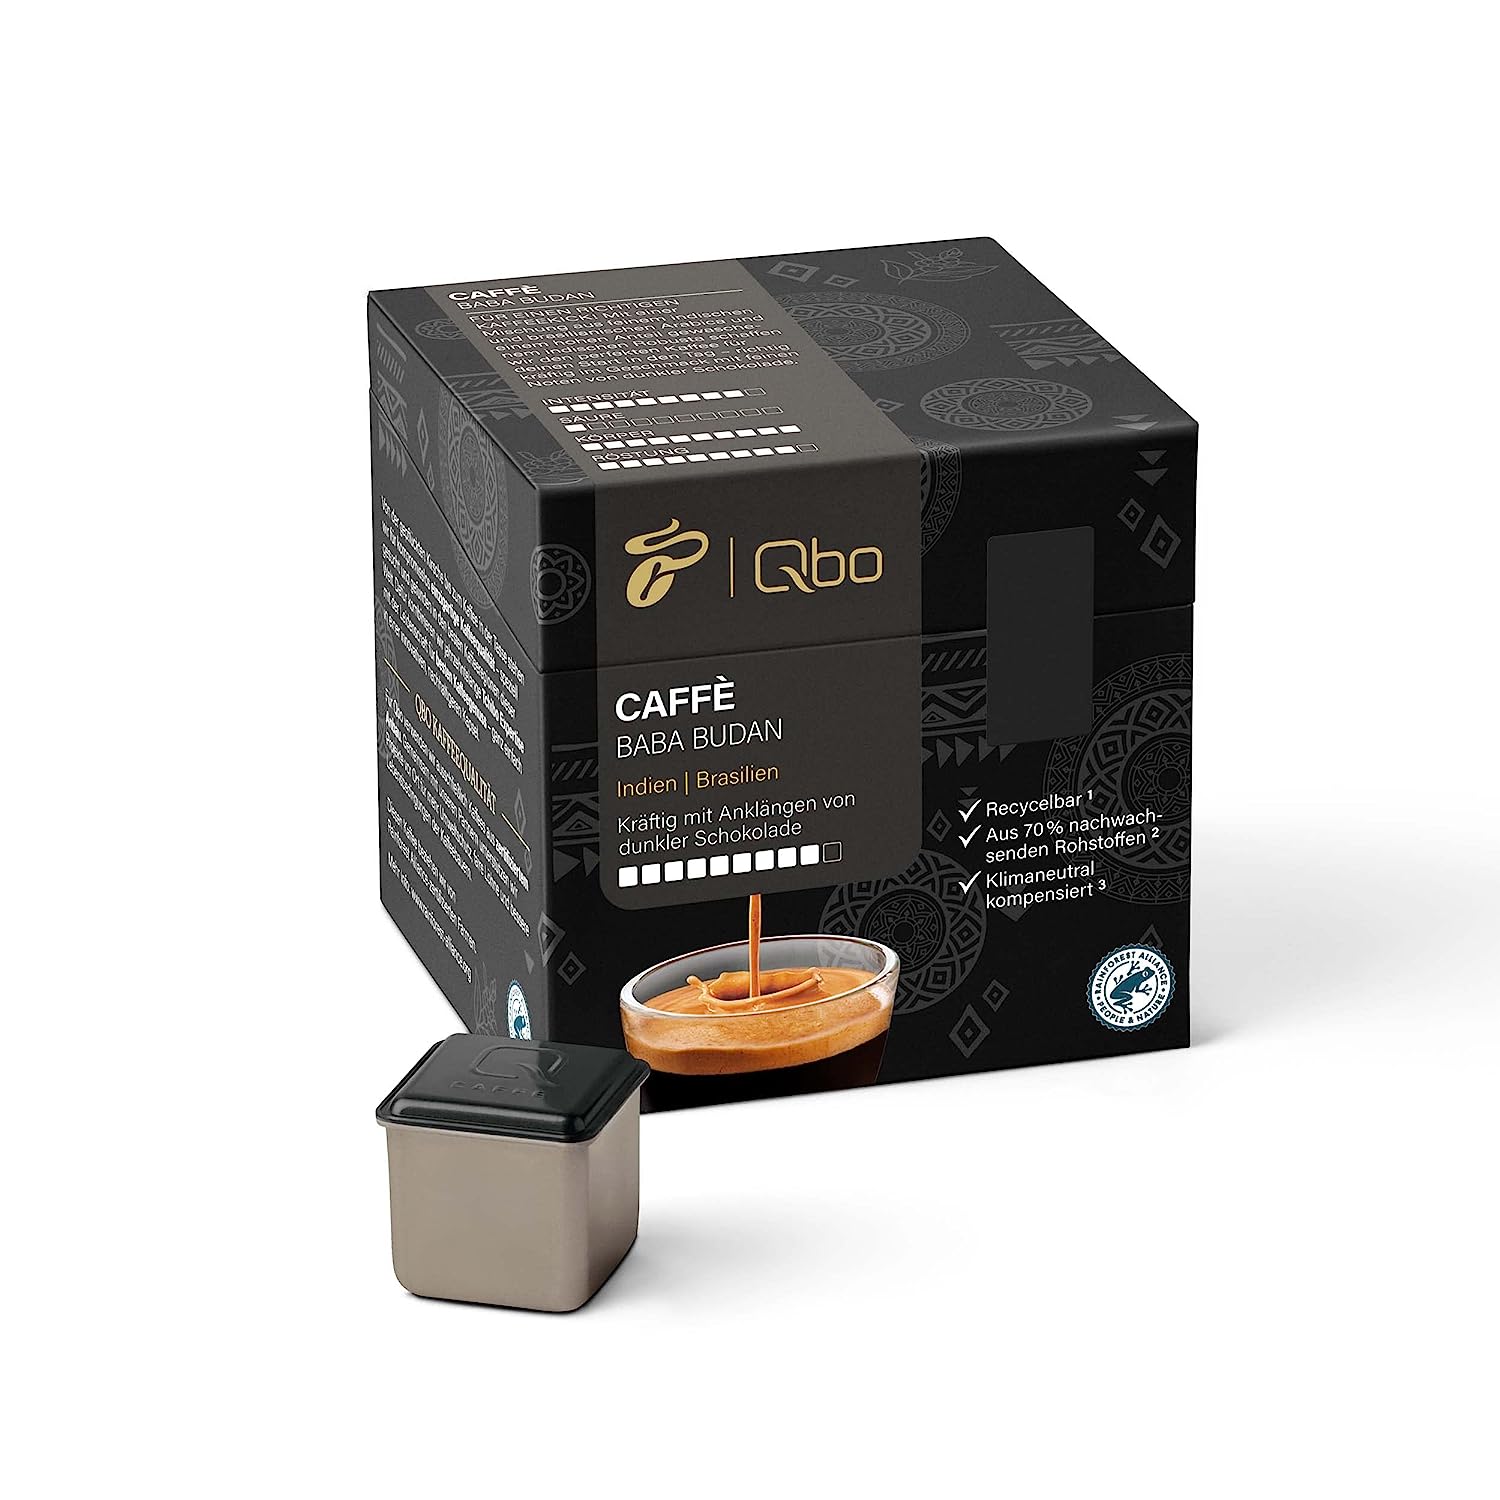 Tchibo Qbo Caffè Baba Budan Premium Kaffeekapseln, 216 Stück – 8x27 Kapseln (Caffè, Intensität 09/10, kräftig, Noten dunkler Schokolade), nachhaltig, aus 70% nachwachsenden Rohstoffen